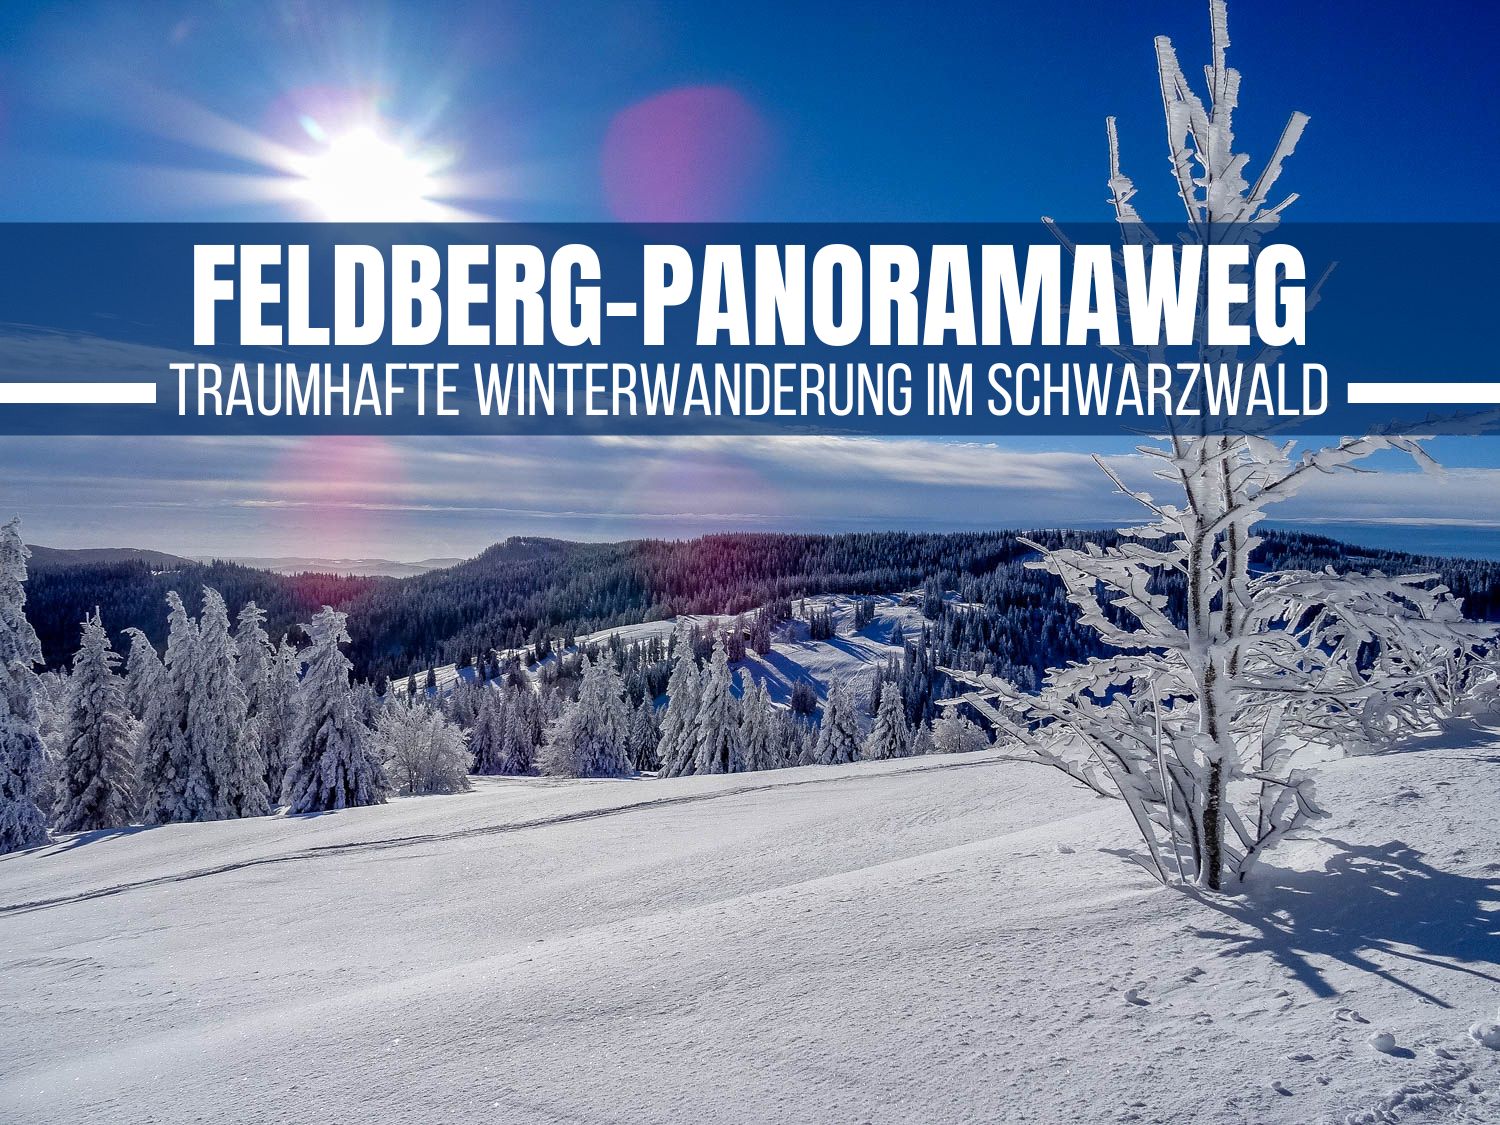 Feldberg-Panoramaweg